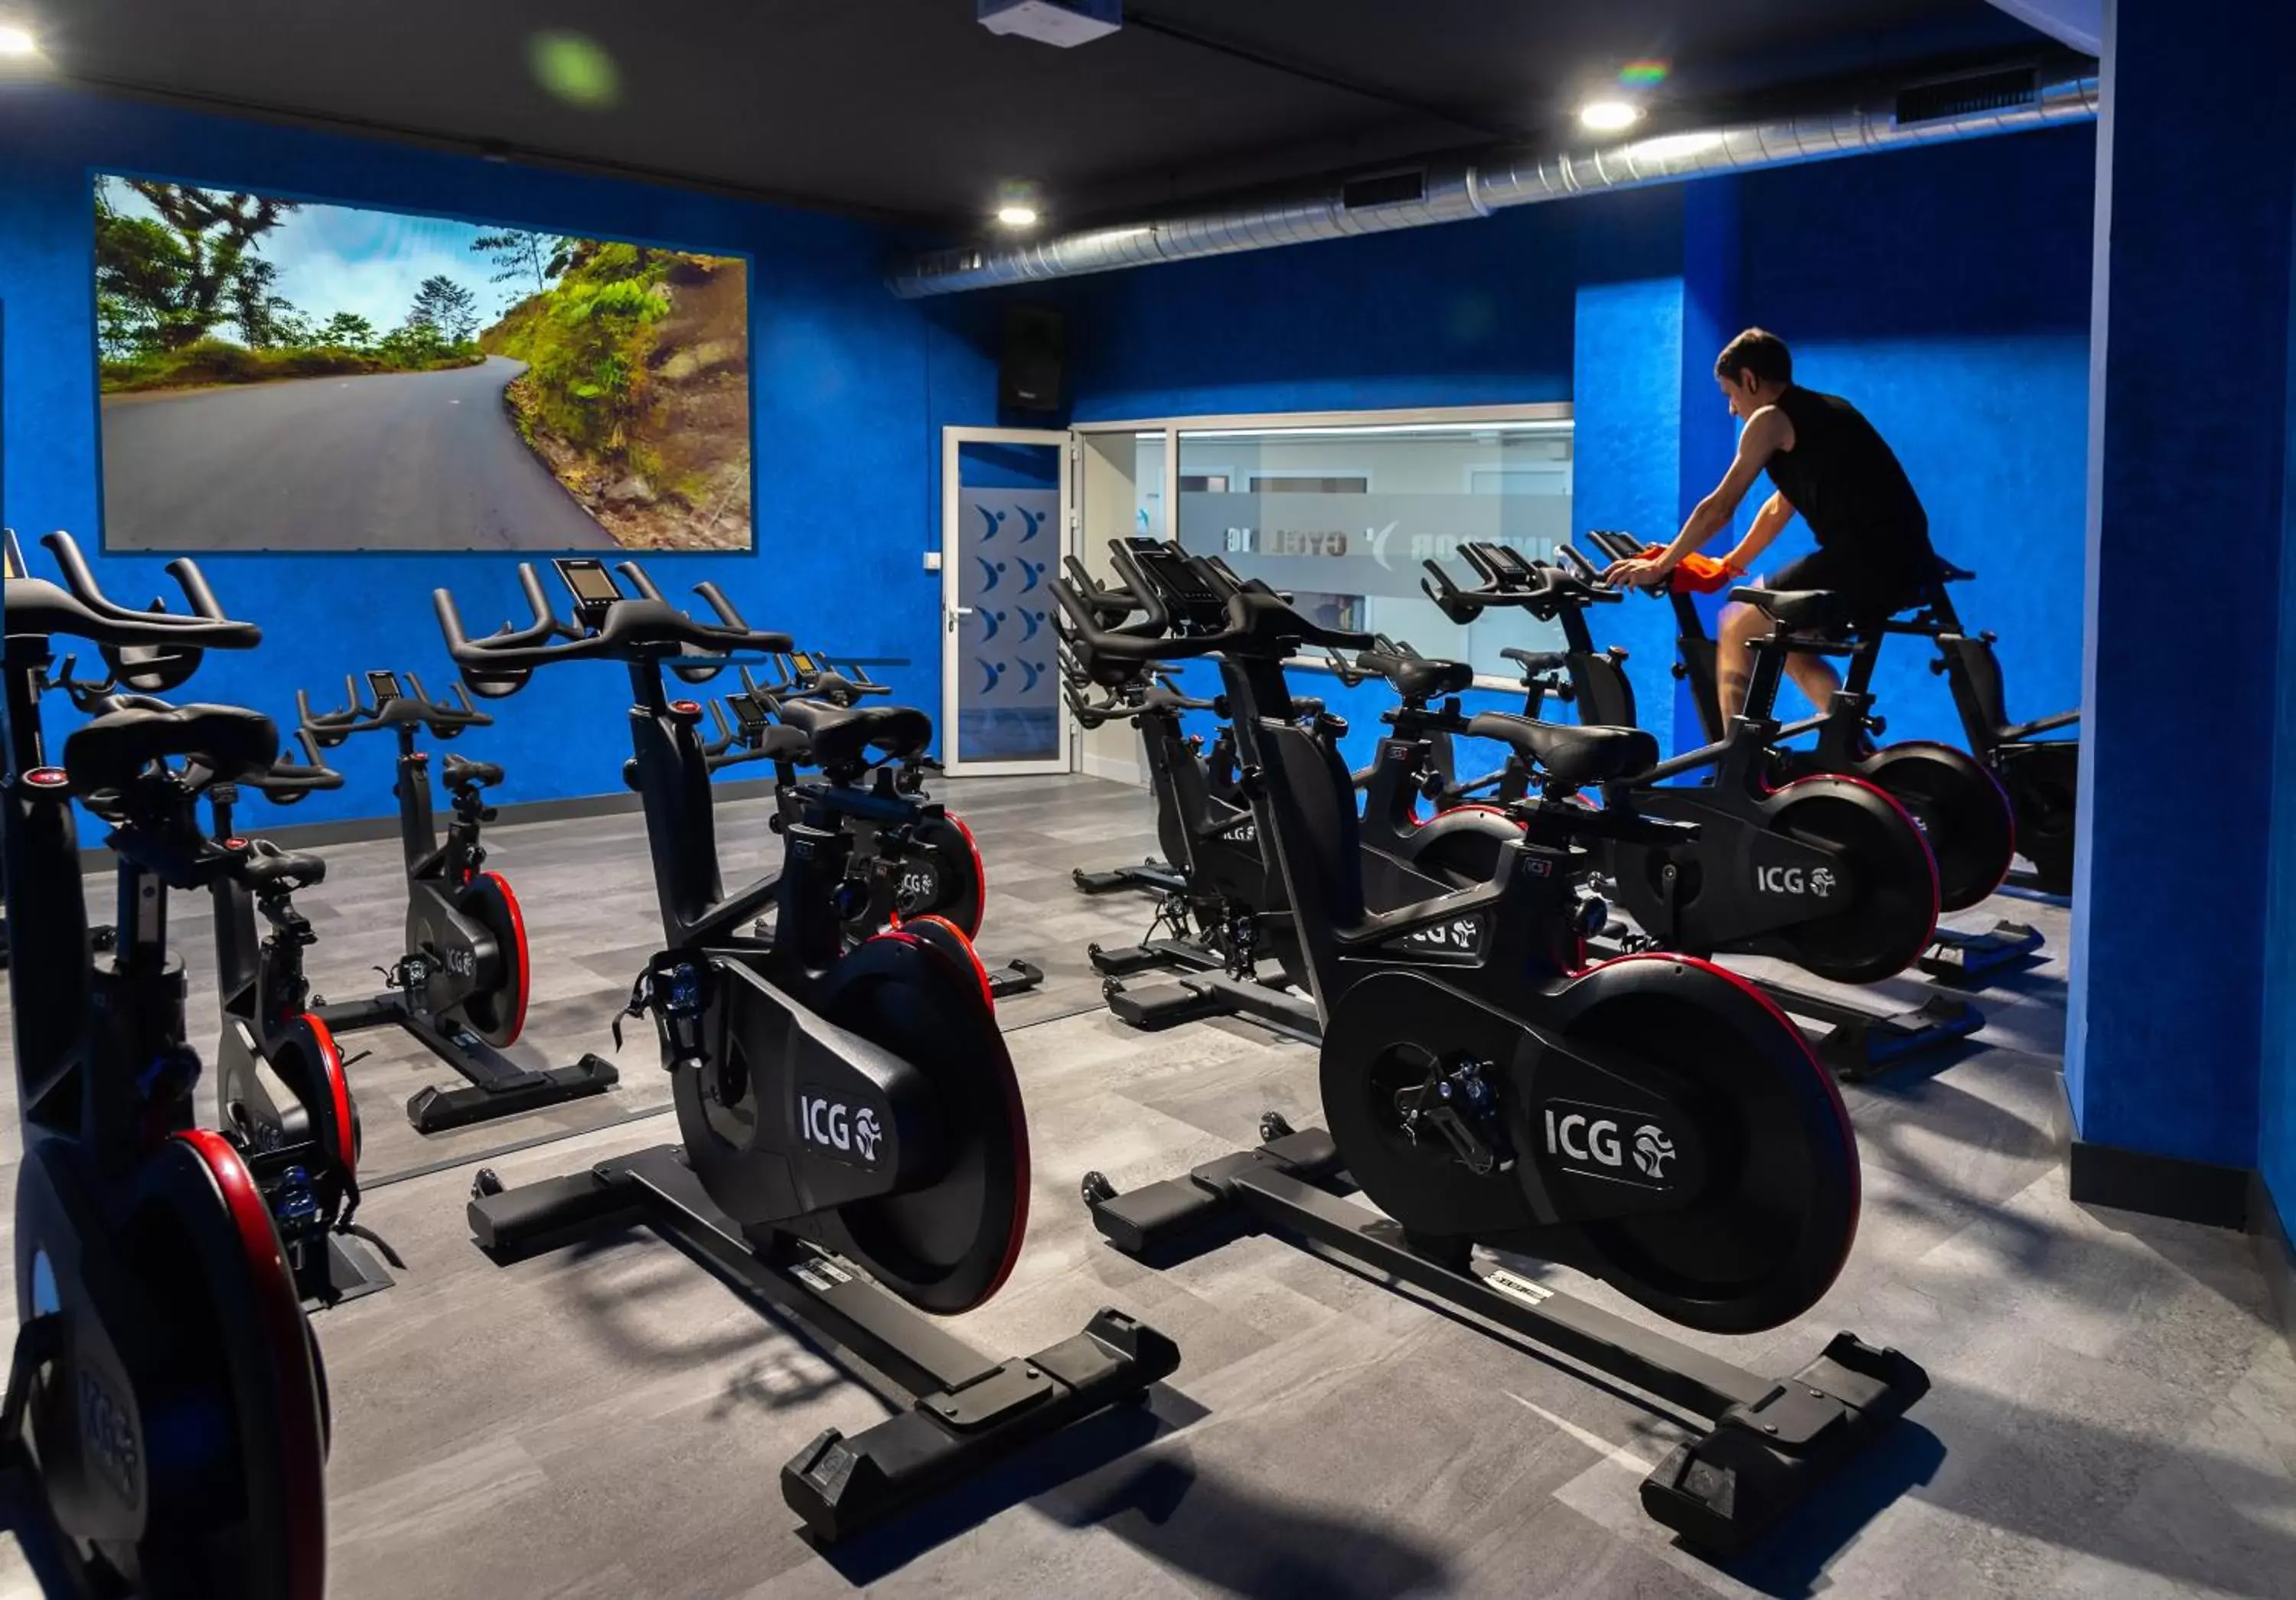 Fitness centre/facilities, Fitness Center/Facilities in Hotel Familia Conde